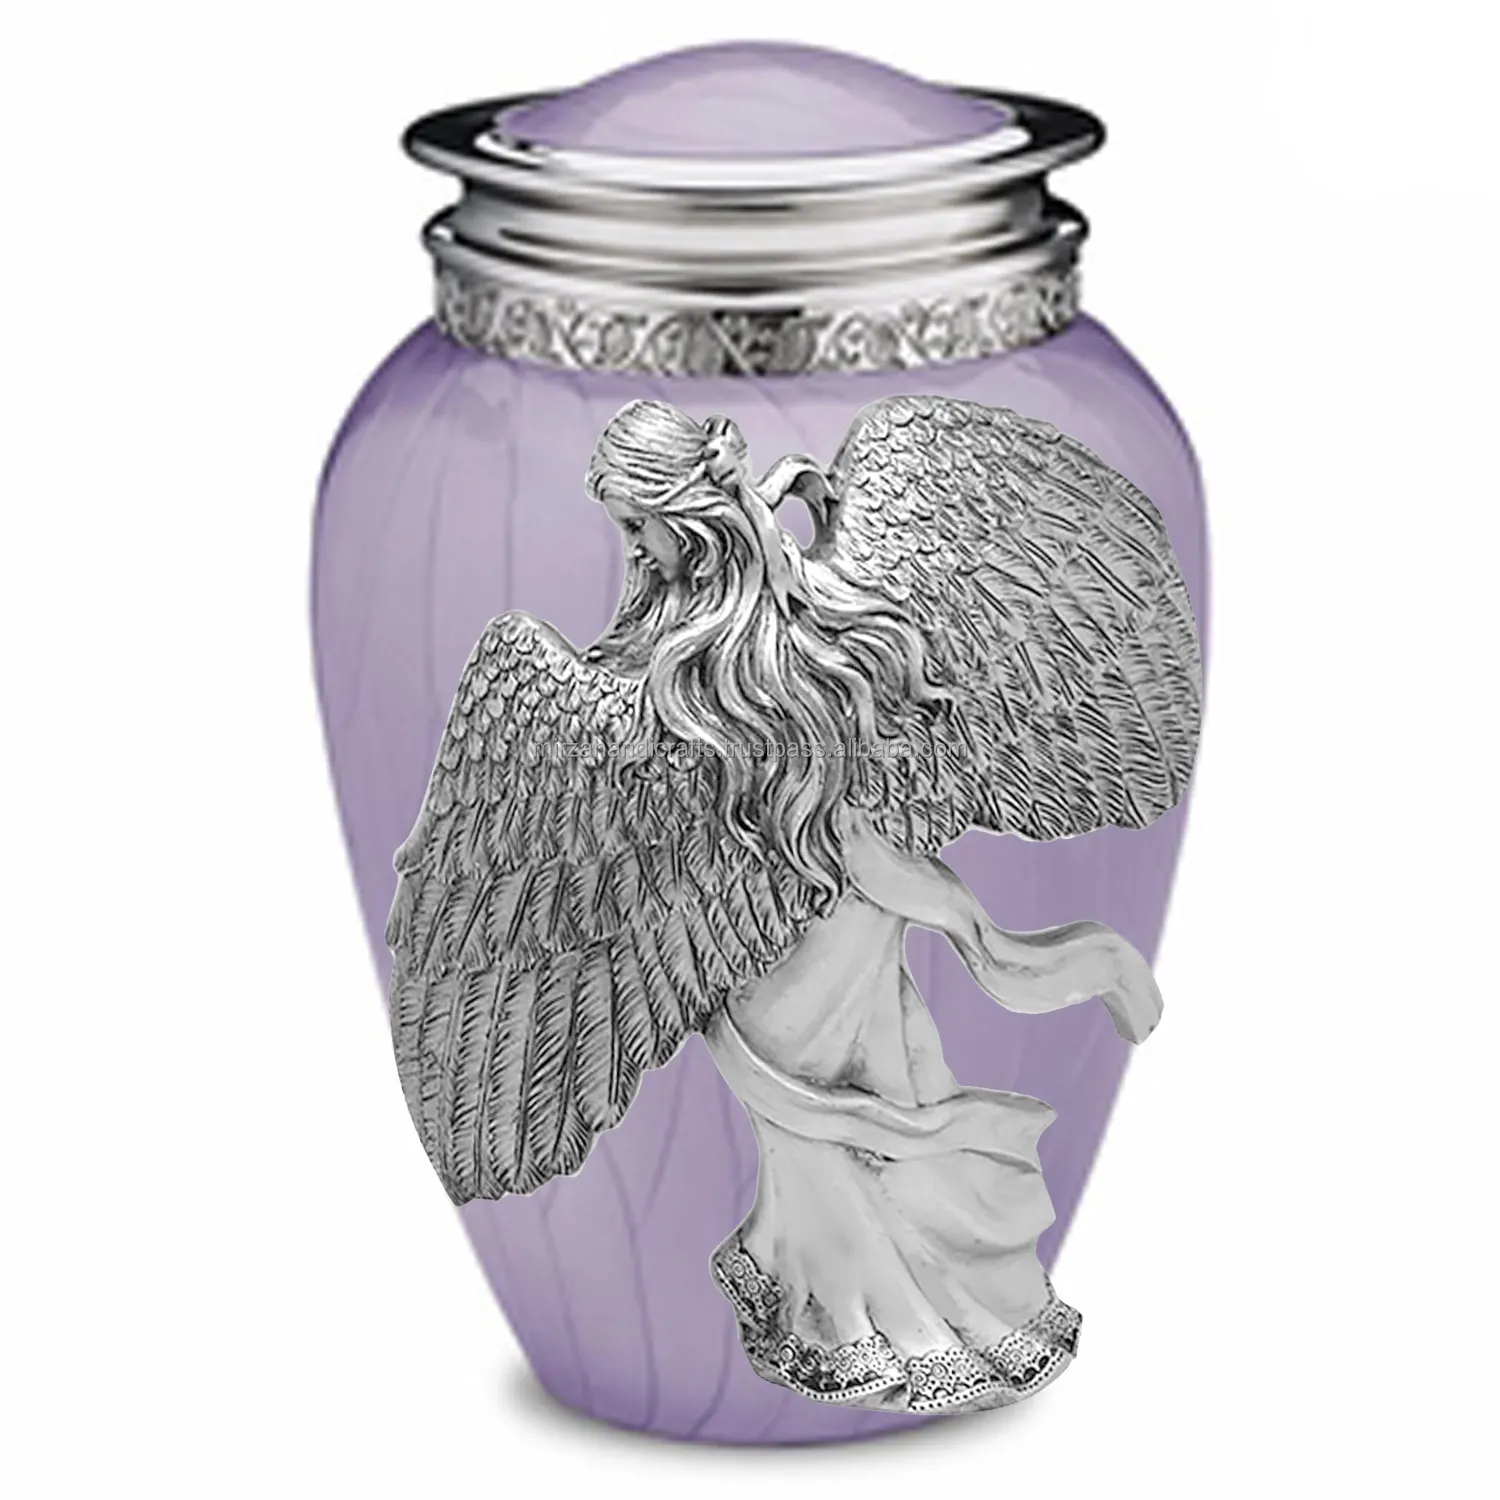 Las alas de un ángel de plata púrpura urna está en un fluido vestido-hecho a mano de Metal sólido urna para las cenizas.